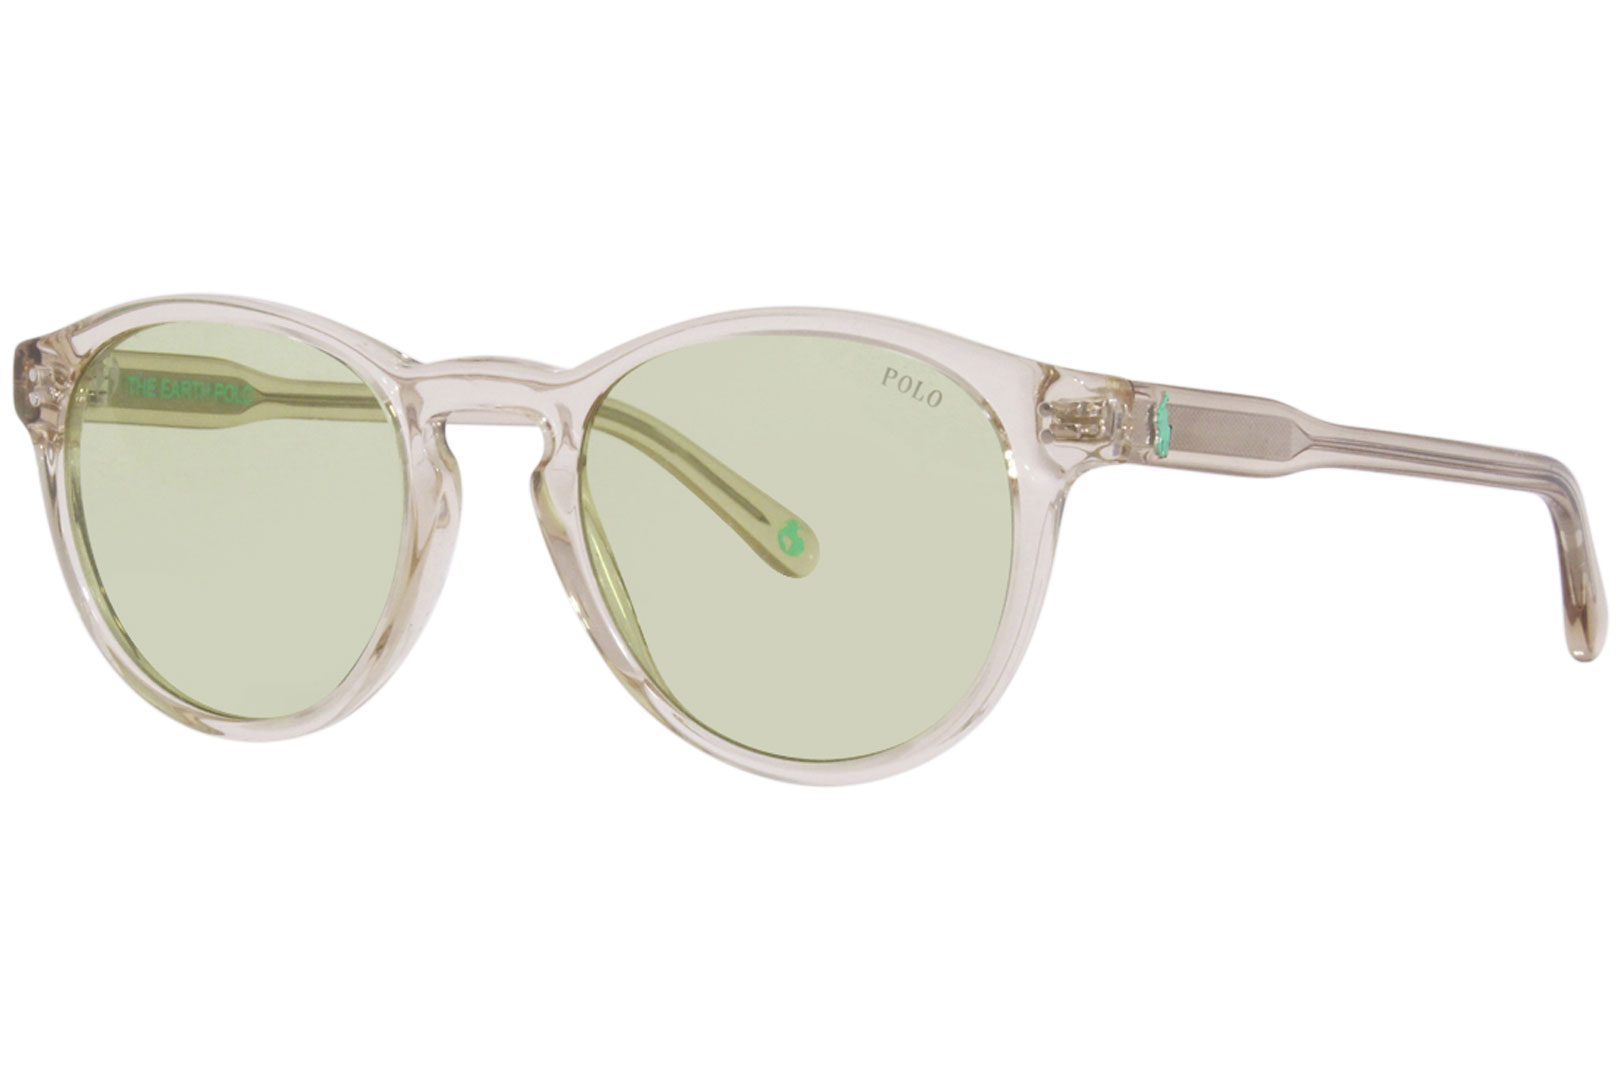 Polo Ralph Lauren Sunglasses - Buy Polo Ralph Lauren Sunglasses online in  India